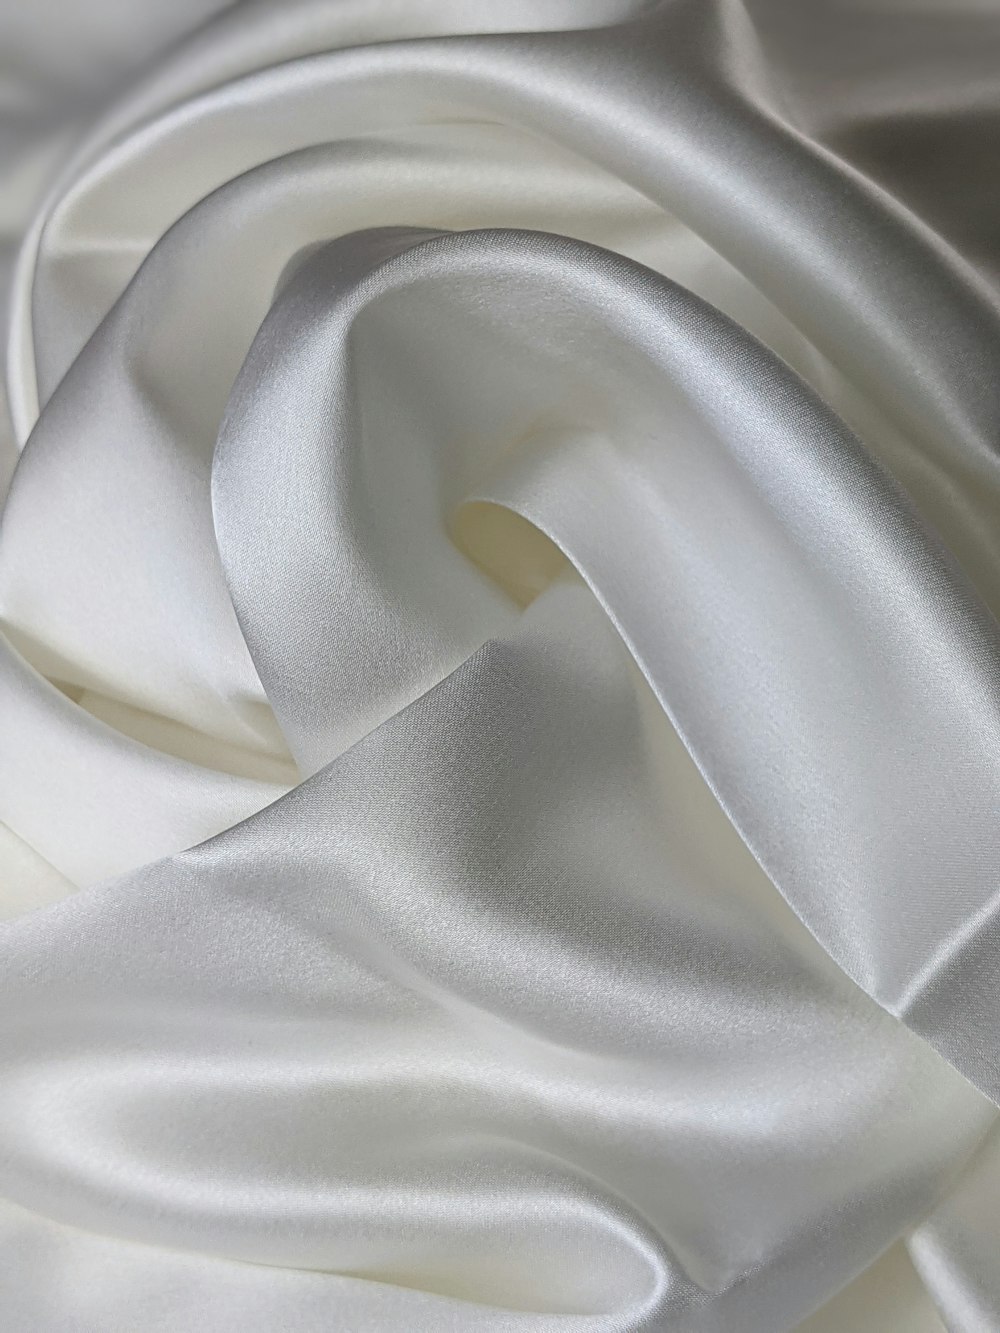 textil blanco sobre textil blanco